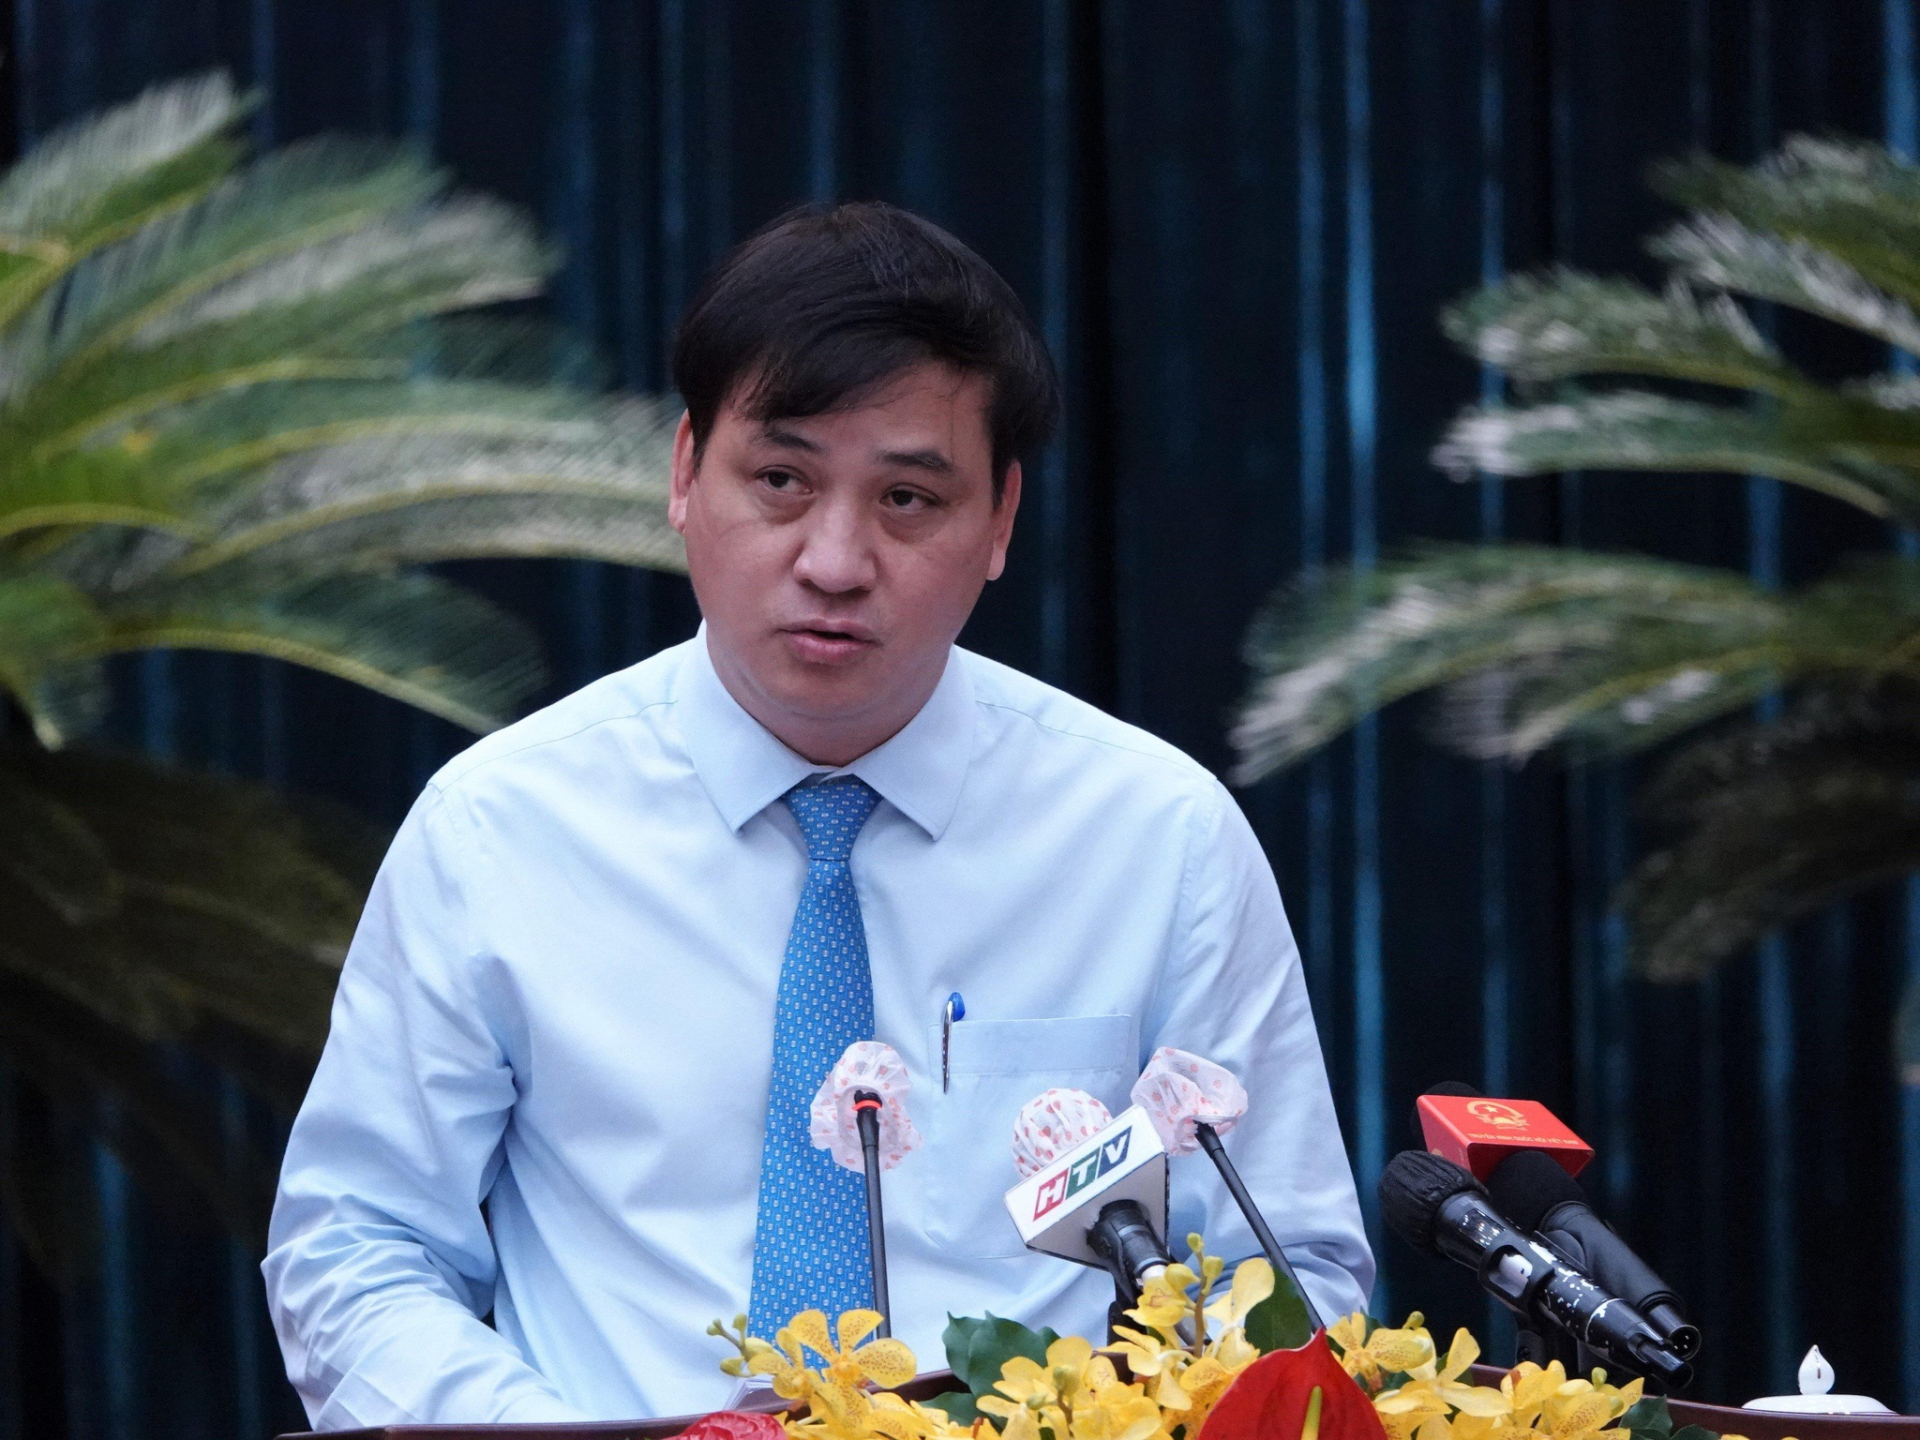 Giám đốc Sở Y tế Long An xác nhận Phó Chủ tịch TP.HCM Lê Hòa Bình đã qua đời sau tai nạn giao thông